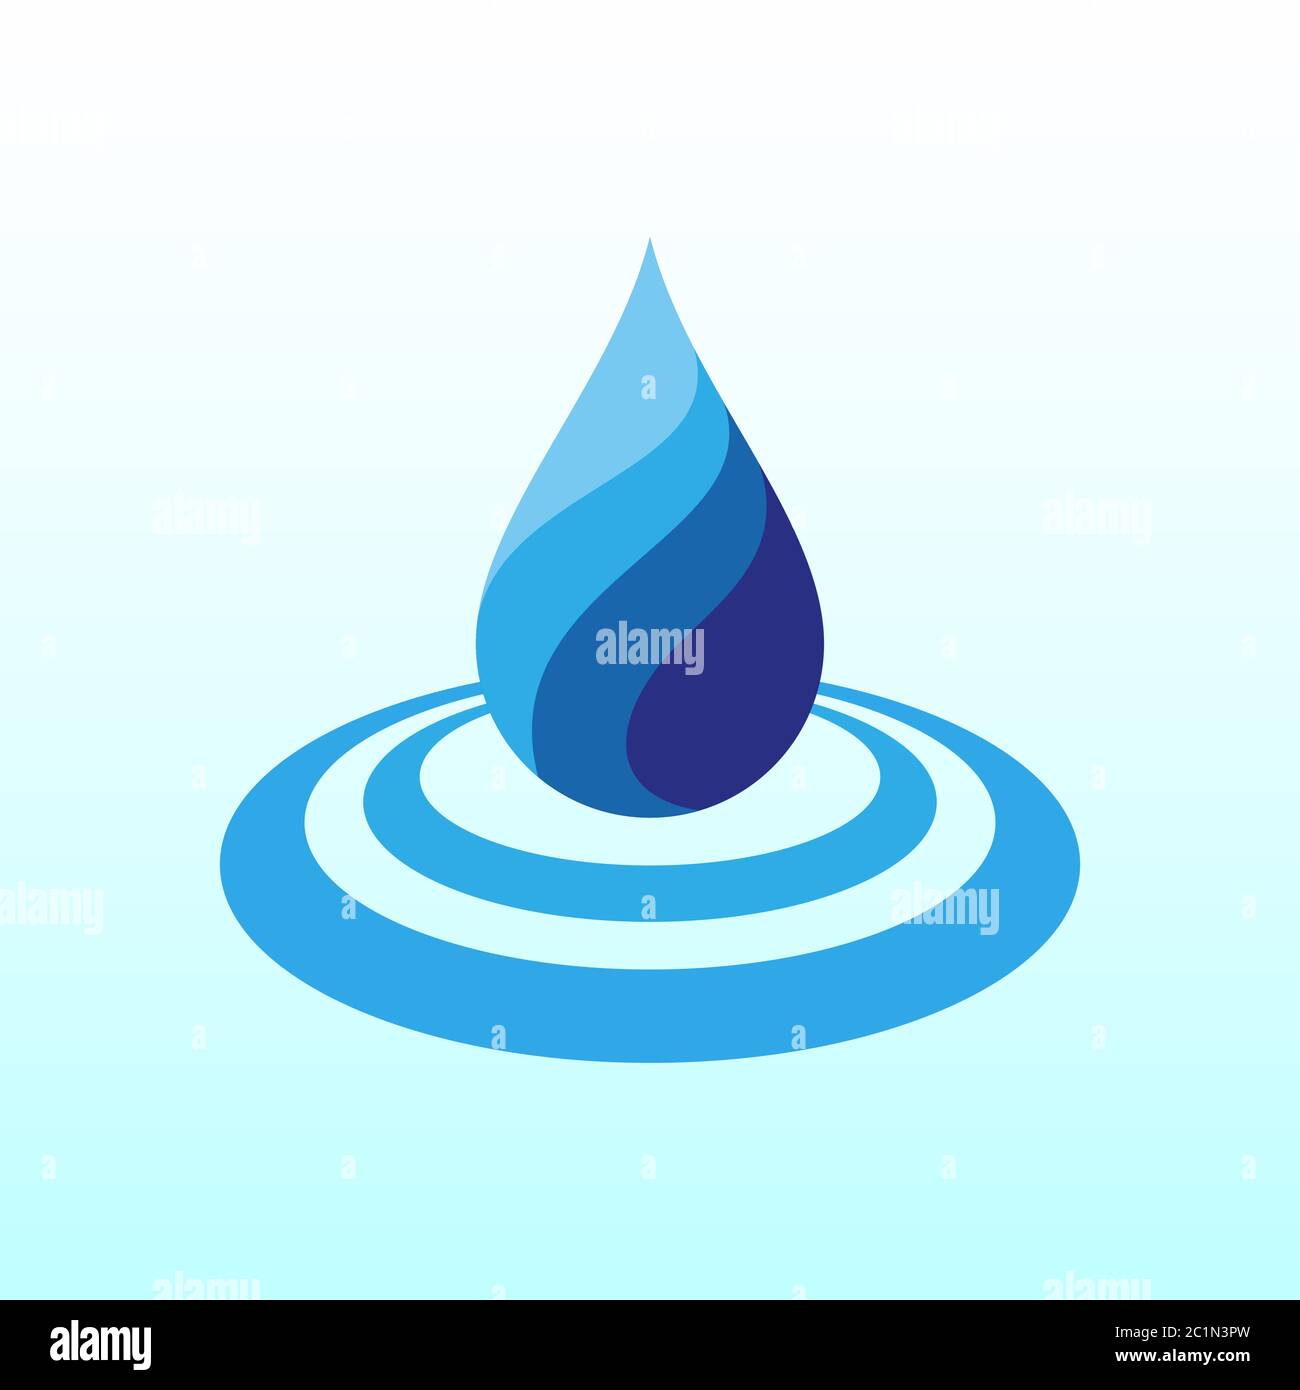 Illustration vectorielle d'une icône de goutte d'eau rafraîchissante avec onde ondulée. Convient aux campagnes sur l'eau propre, aux sources de vie naturelles et saines. Illustration de Vecteur